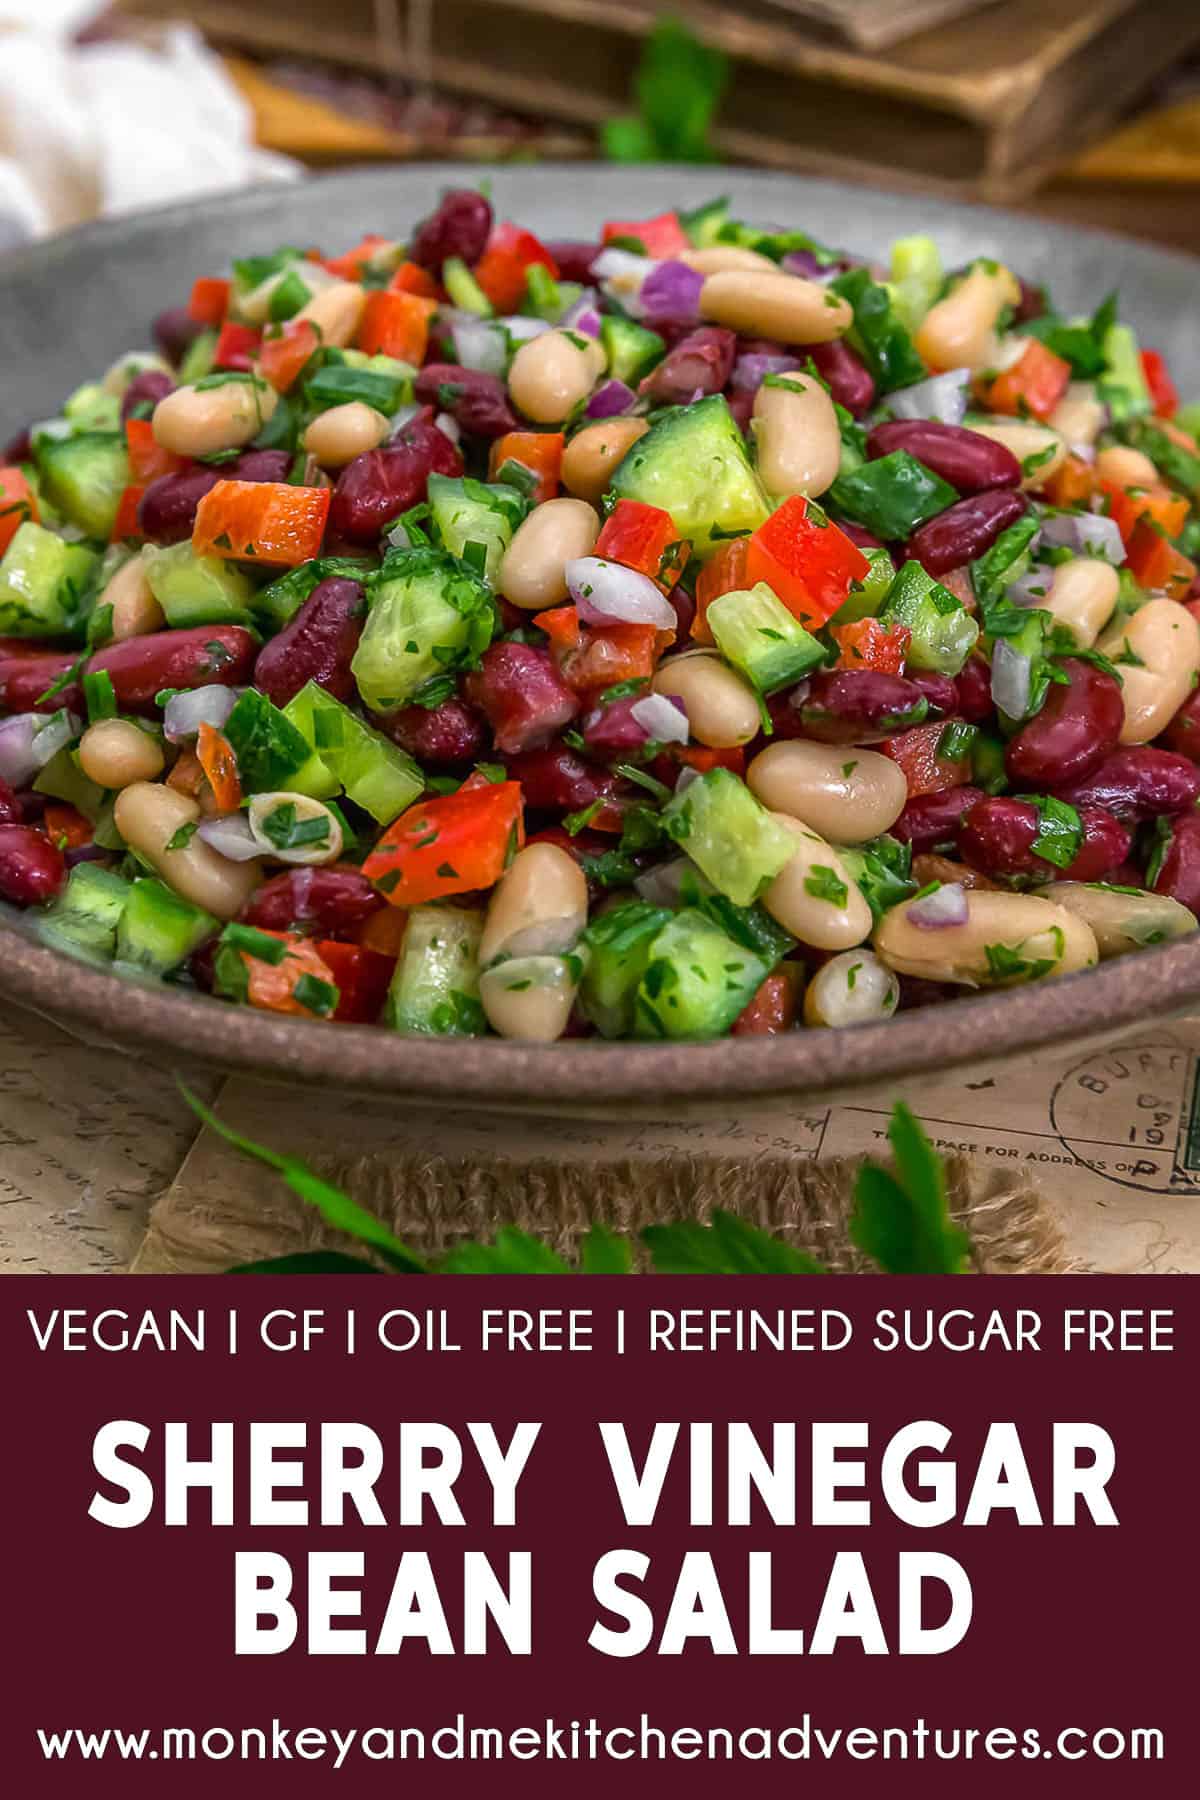 Oil Free Sherry Garden Bean Salad with text description